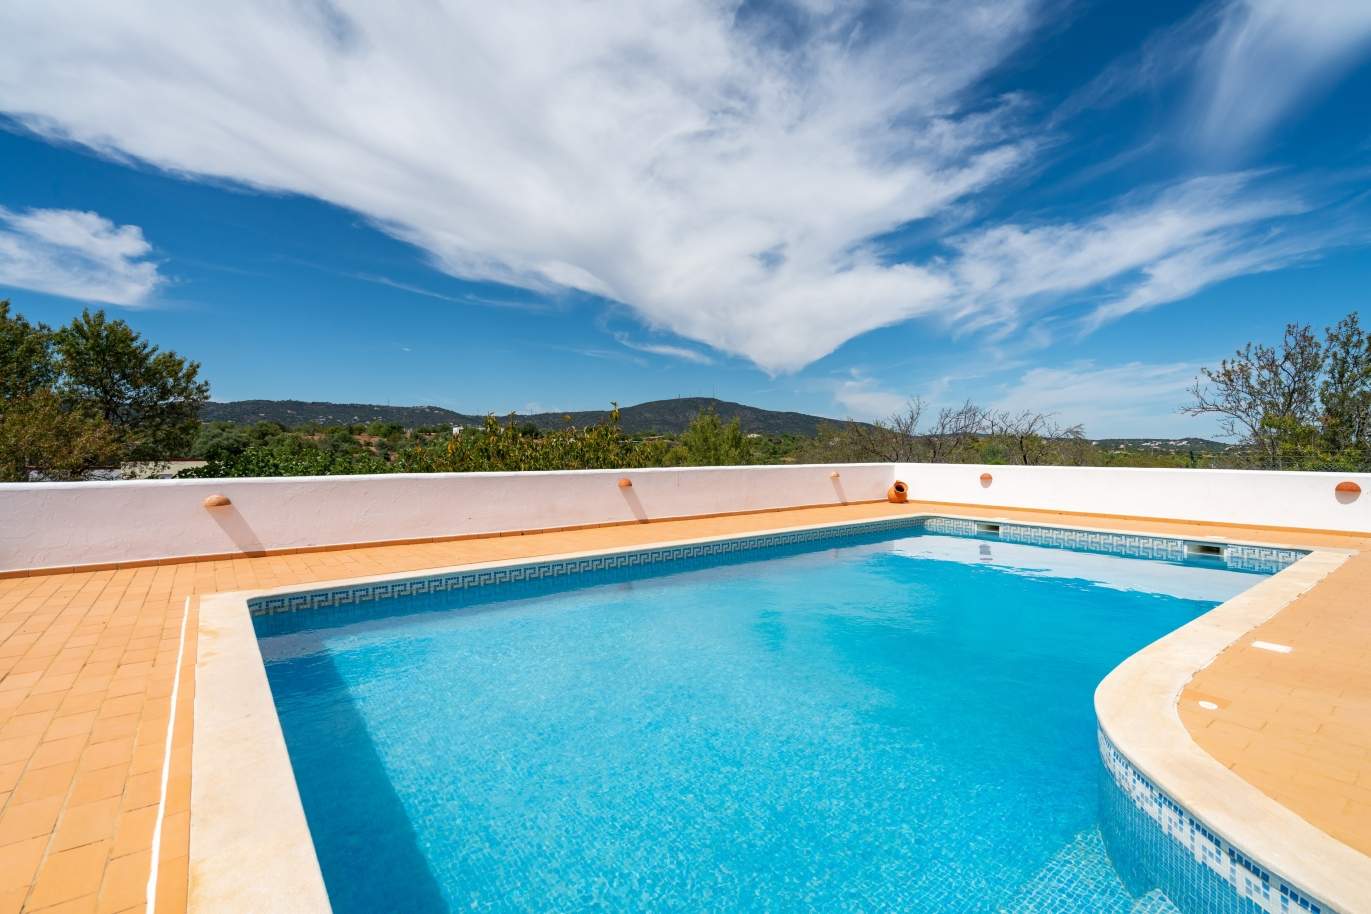 Moradia V4 com piscina, para venda, Quelfes, Olhão, Algarve_144156